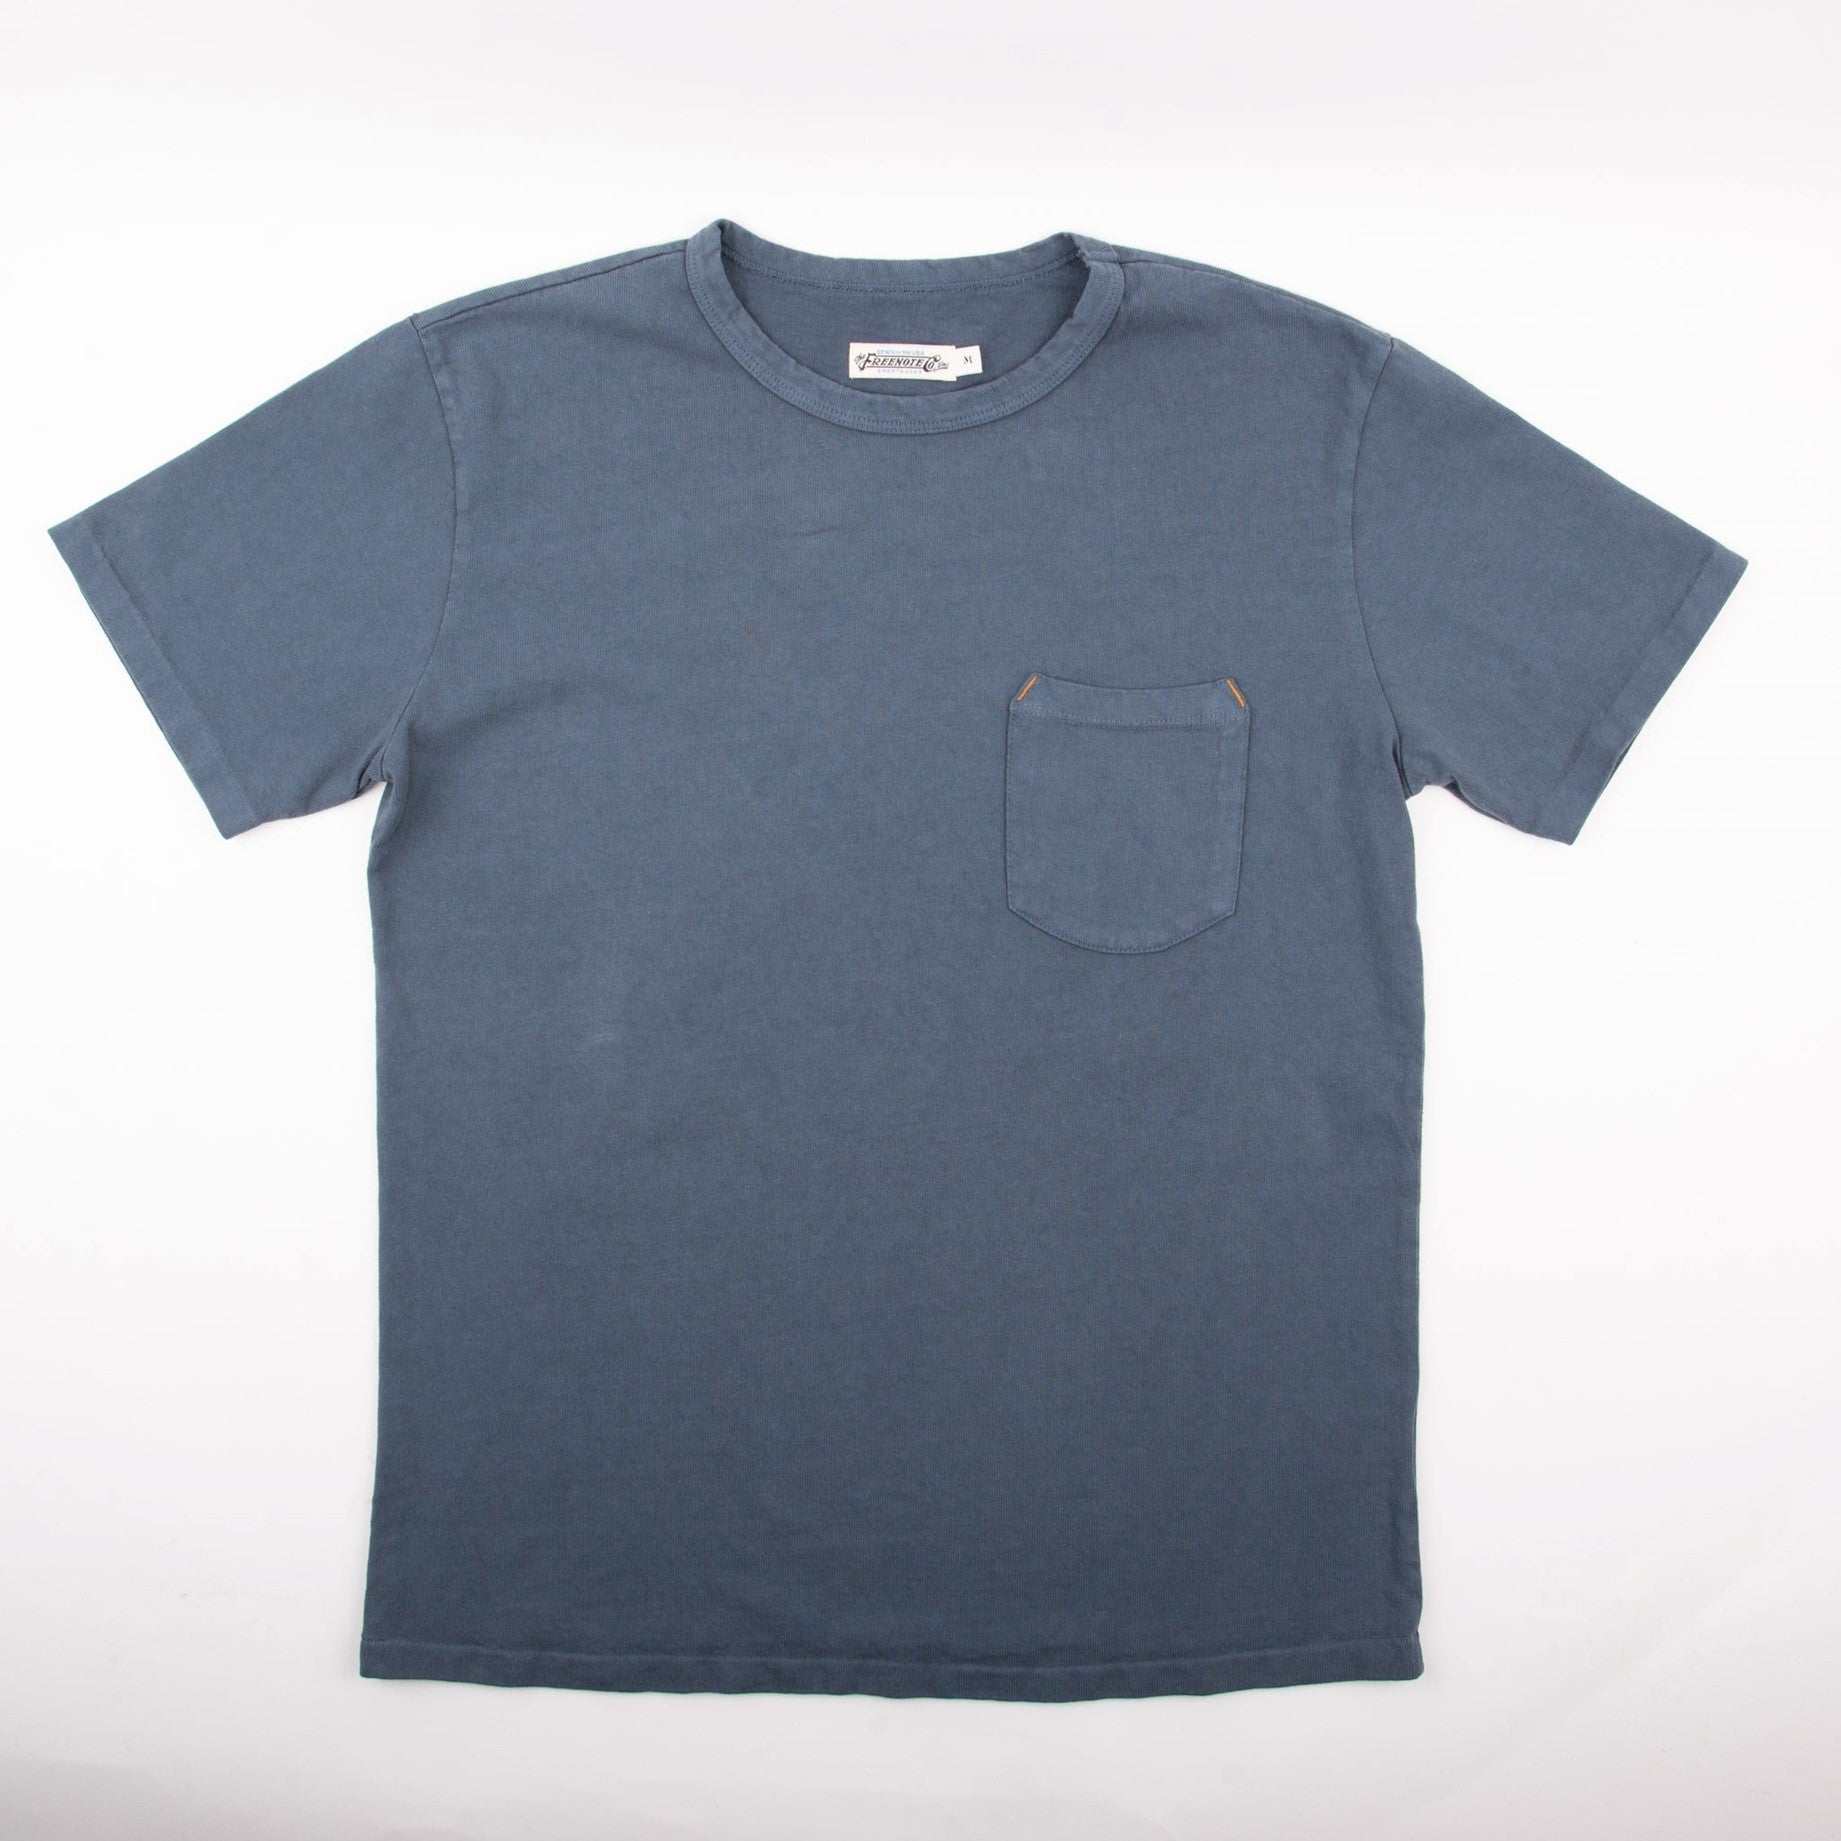 Faded Blue l T shirt 13 oz Freenote